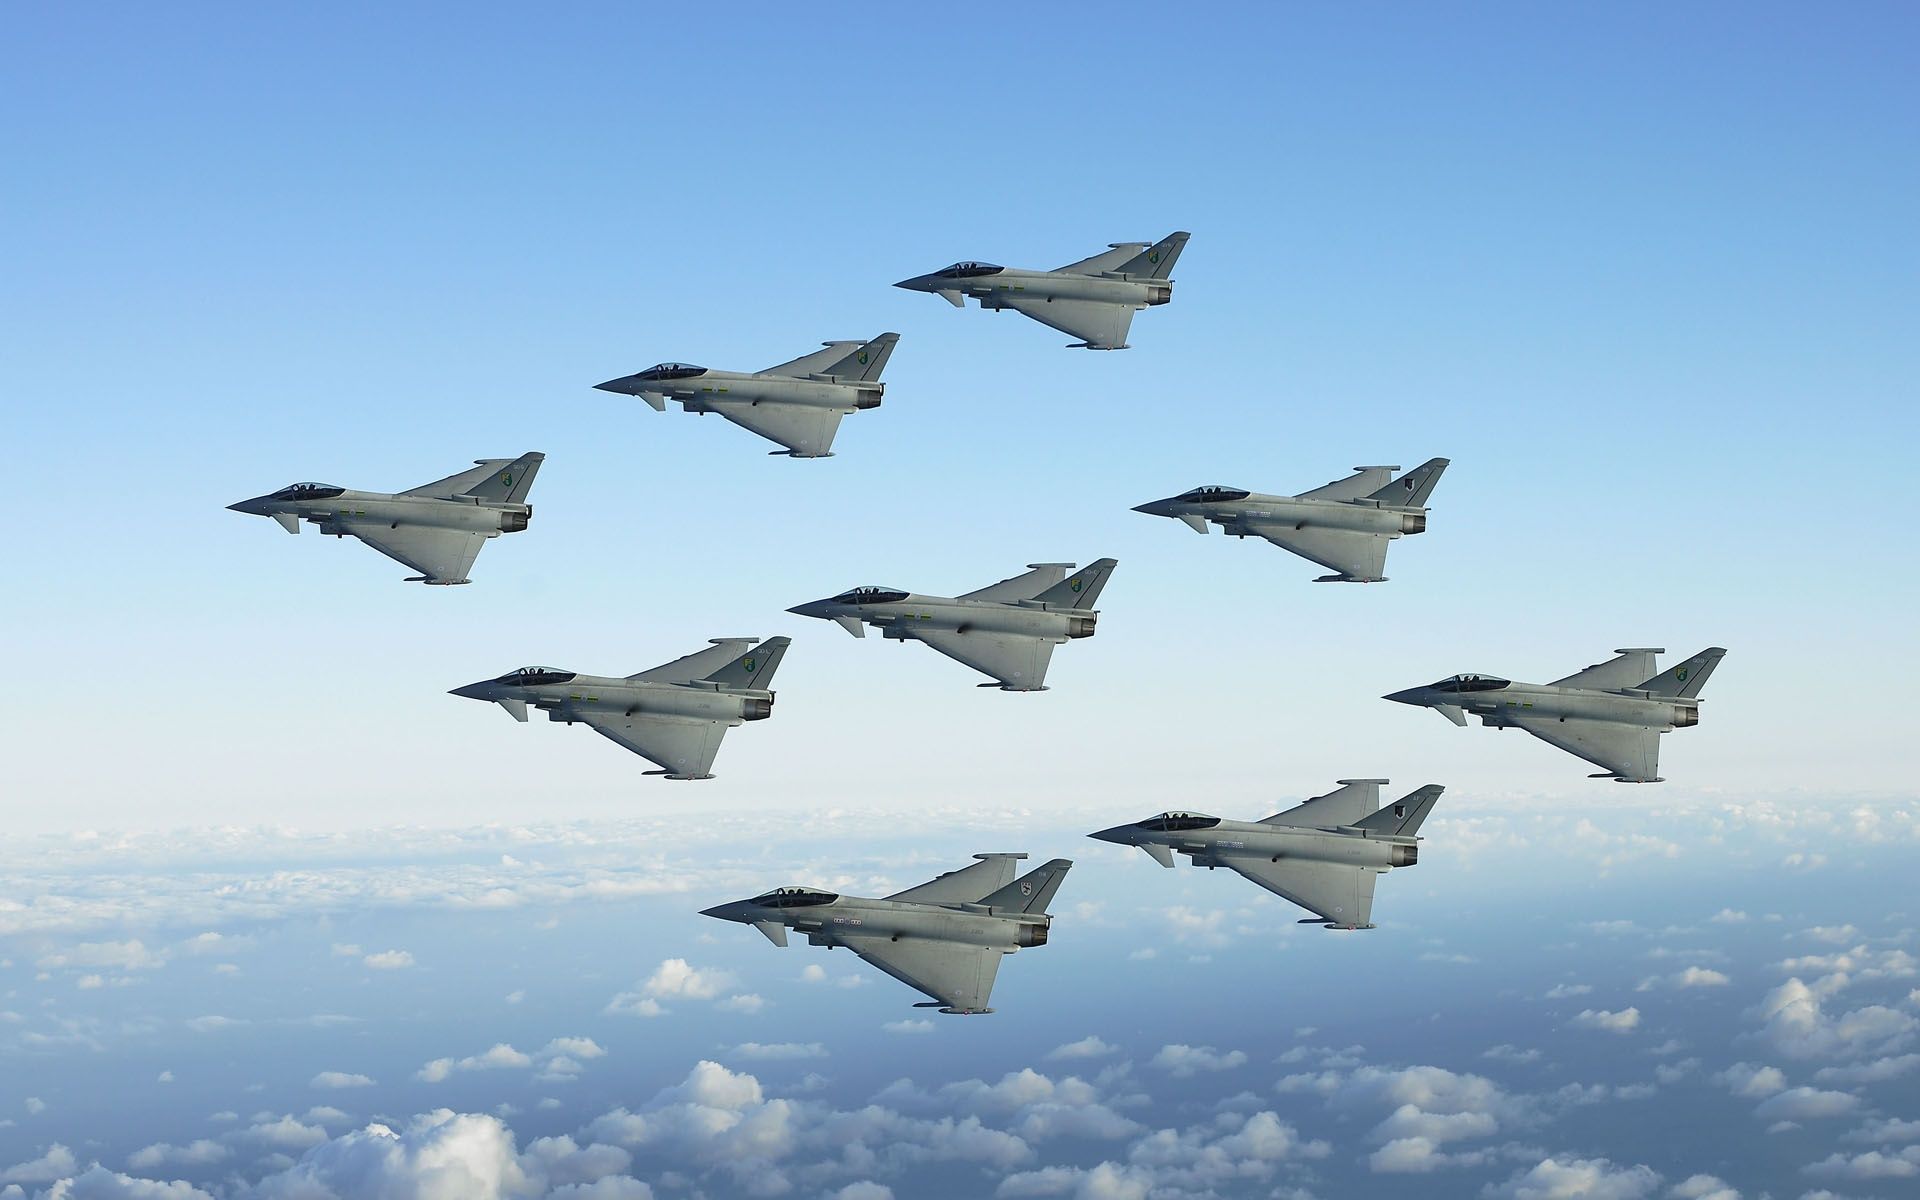 هواپیماهای جنگنده با نقش محوری در درگیری های مختلف